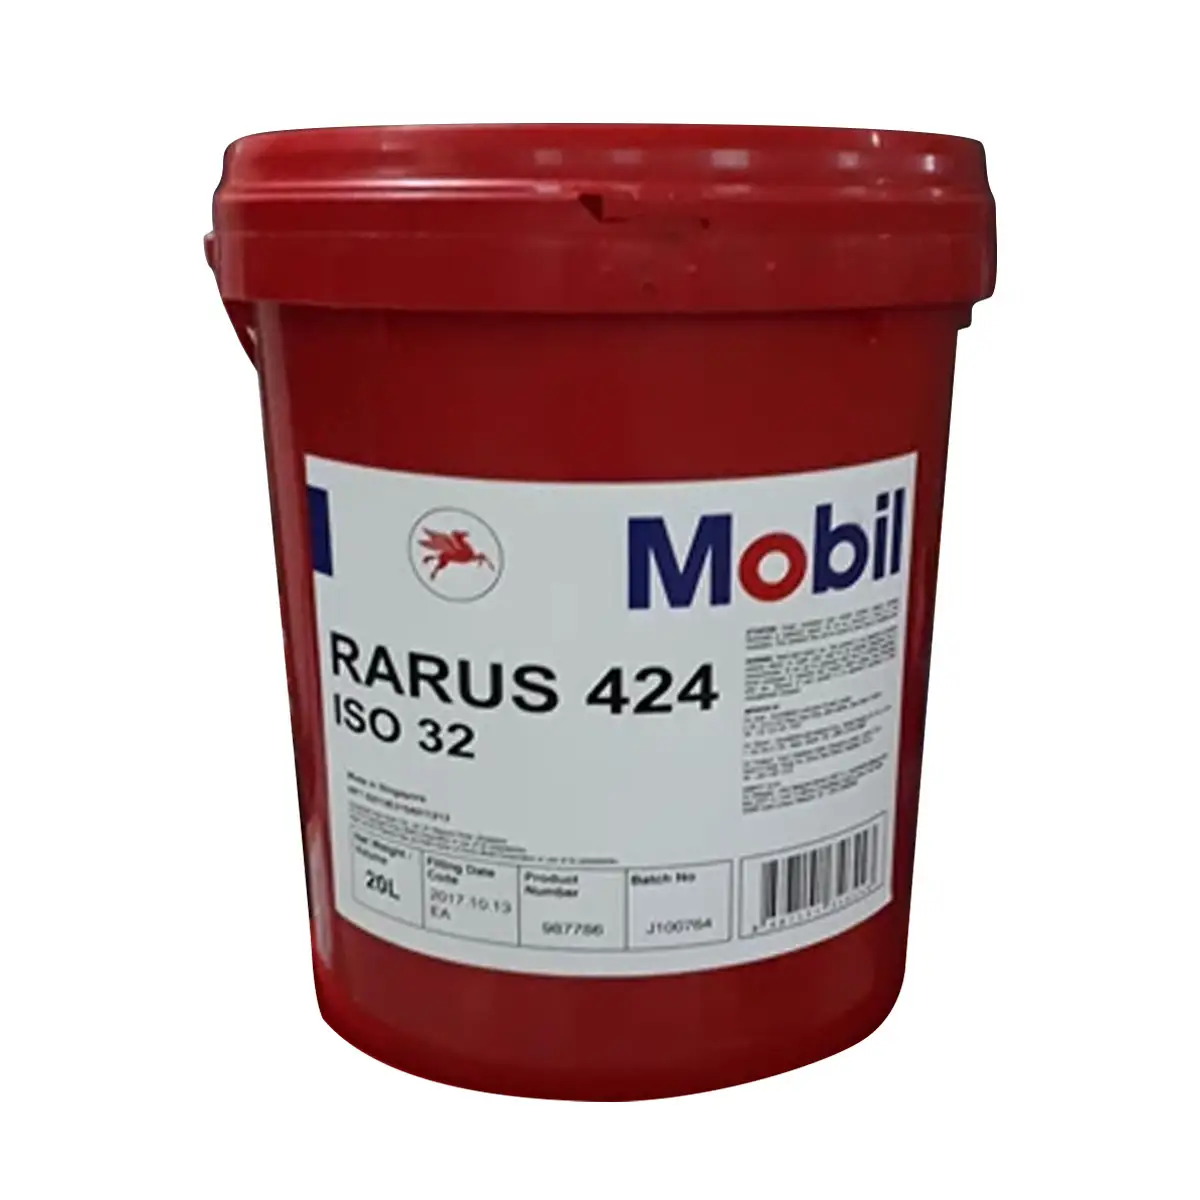 Mobil Rarus 424 Series ISO 32 Oilsquare Huile moteur industrielle Additif haute performance pour une bonne protection de l'équipement